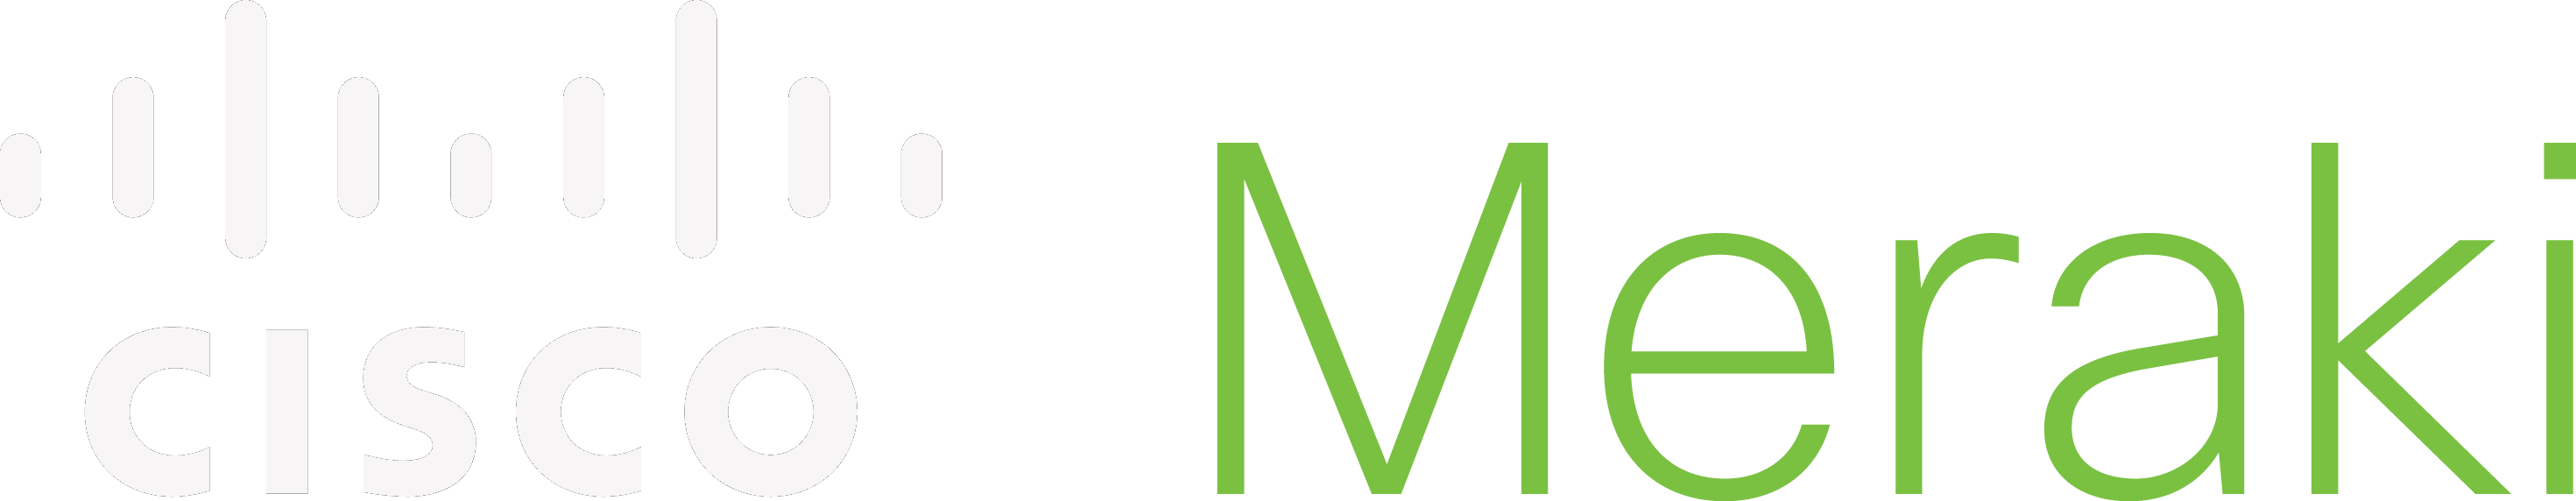 Cisco Meraki Partner logo